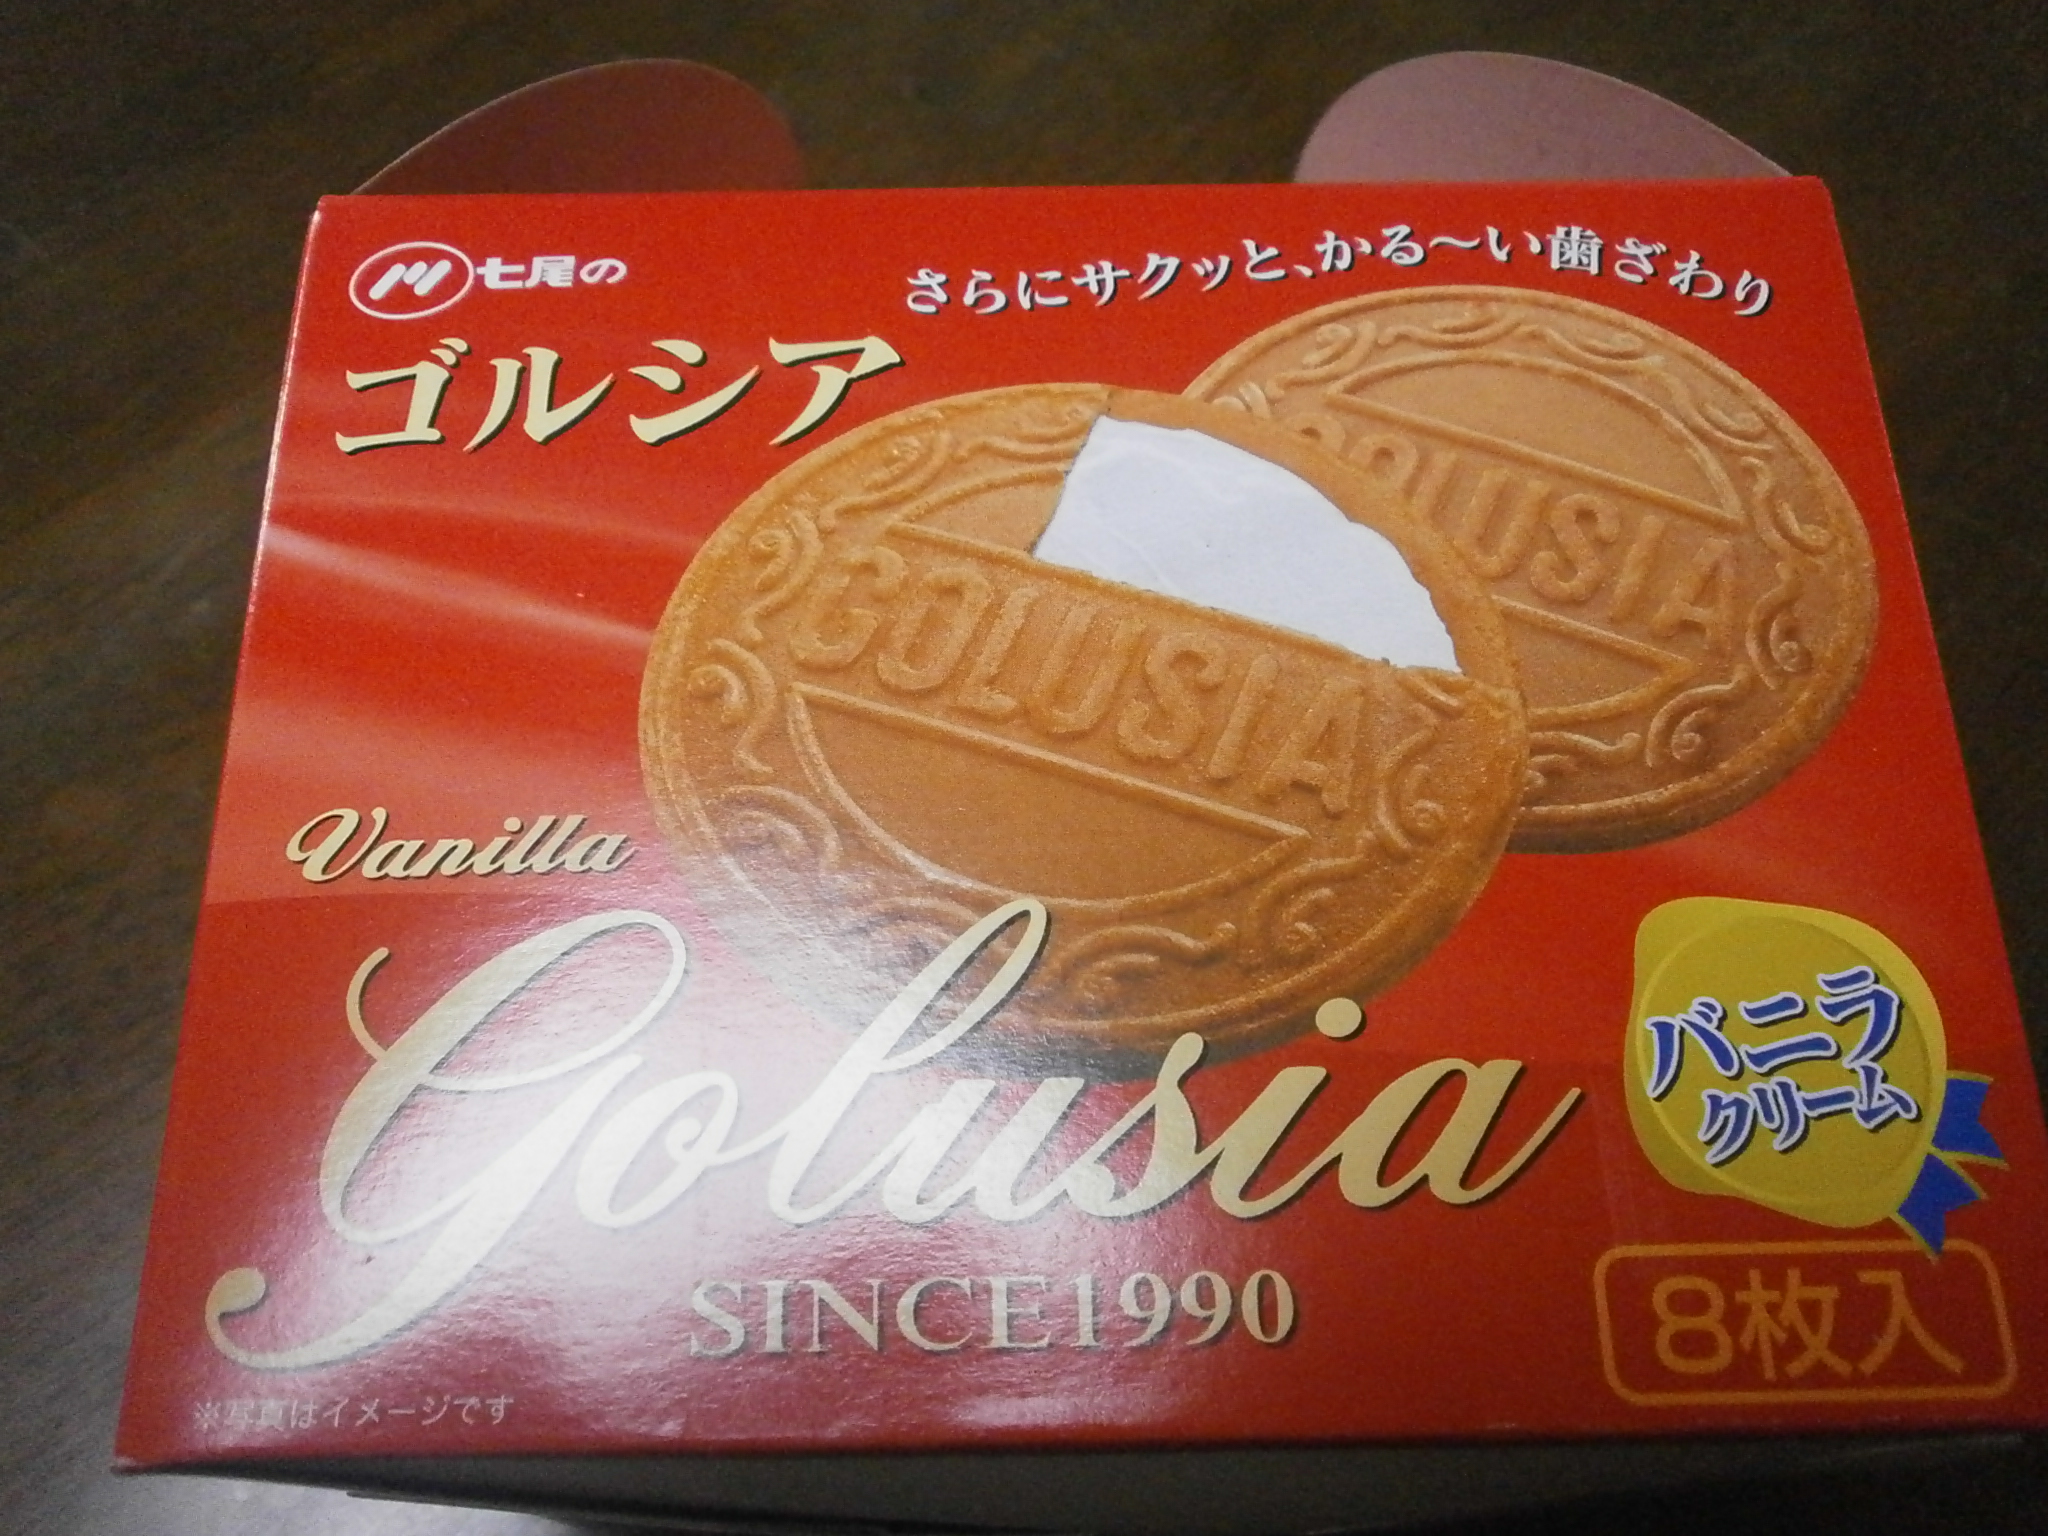 Gorushia（香草奶油）